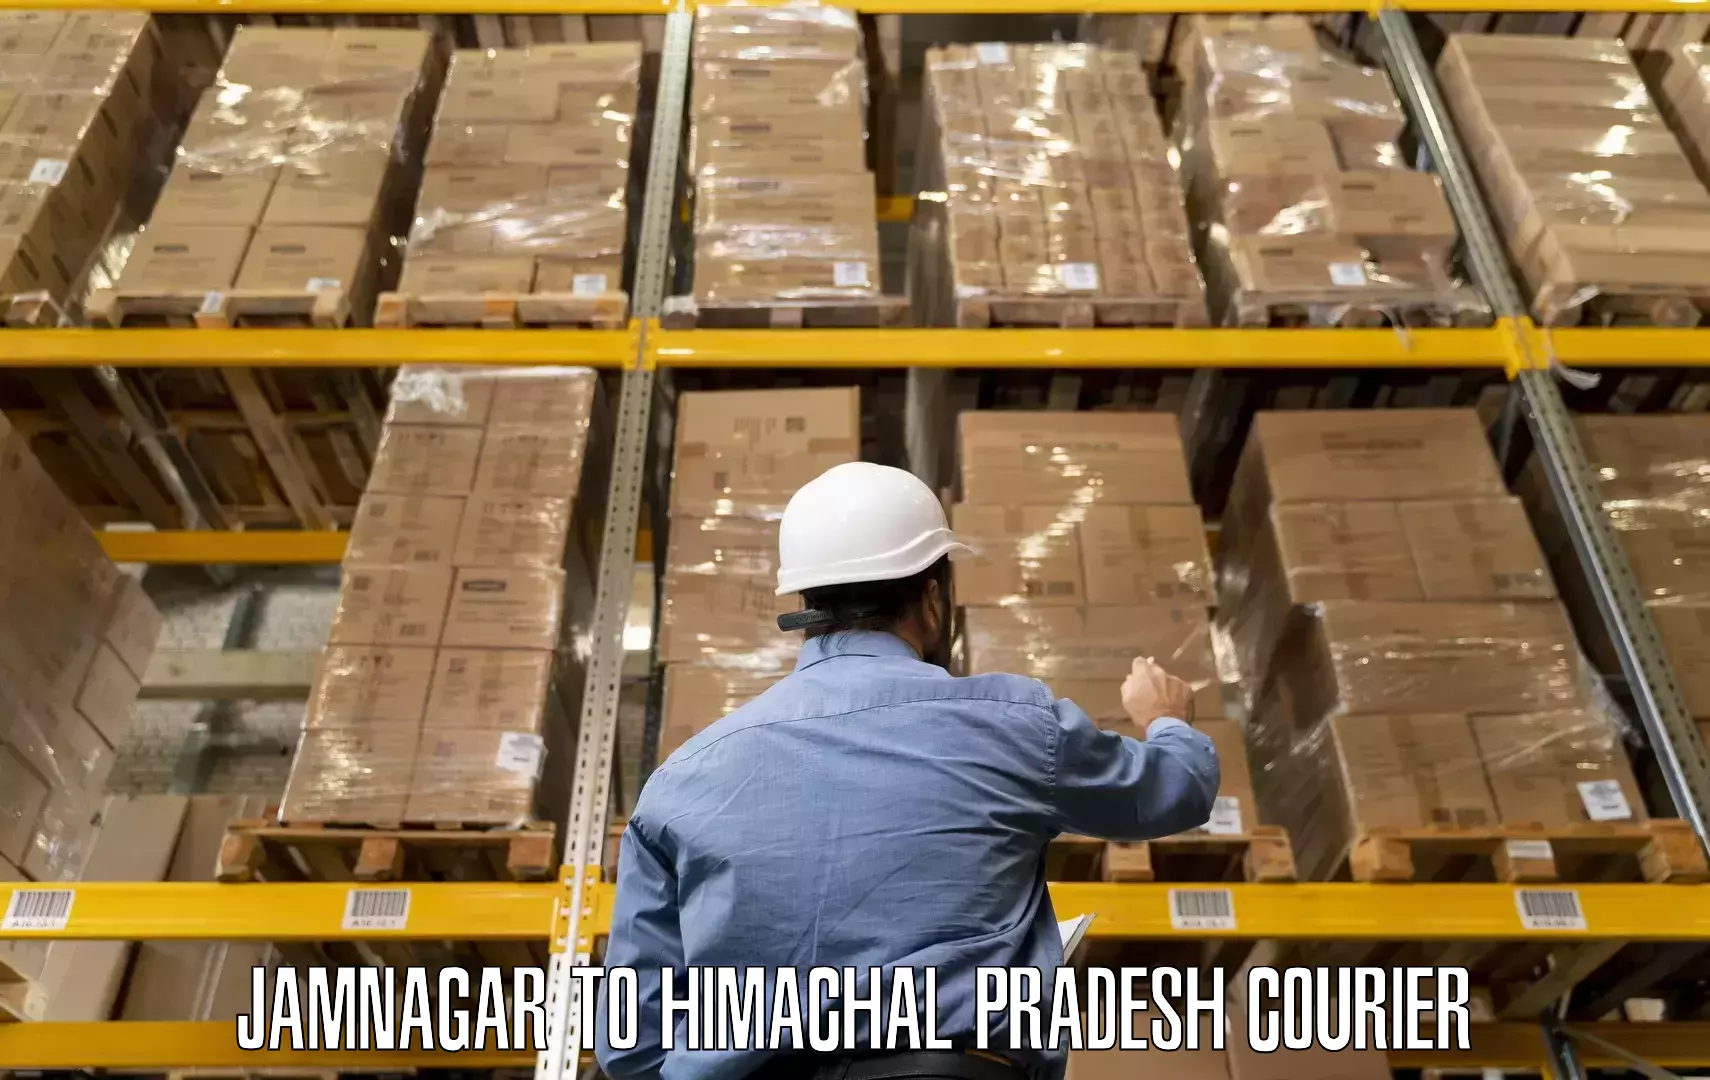 Skilled furniture movers in Jamnagar to Himachal Pradesh